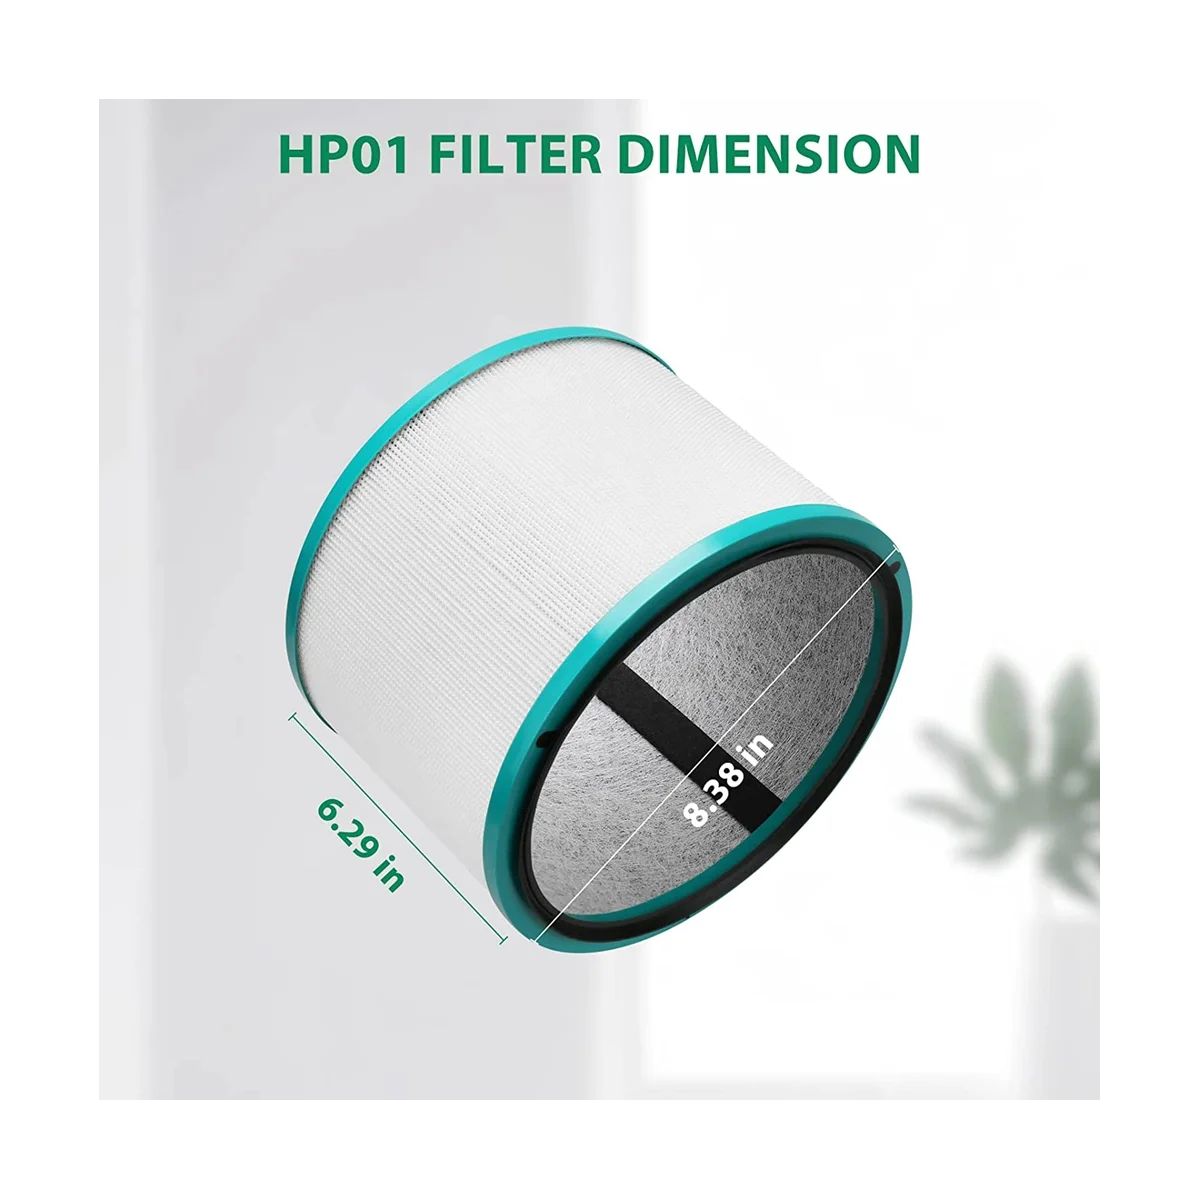 Замена фильтра HEPA для HP01 HP02 DP01 DP02 Pure Hot + Cool настольный очиститель, сравнить с частью 968125-032